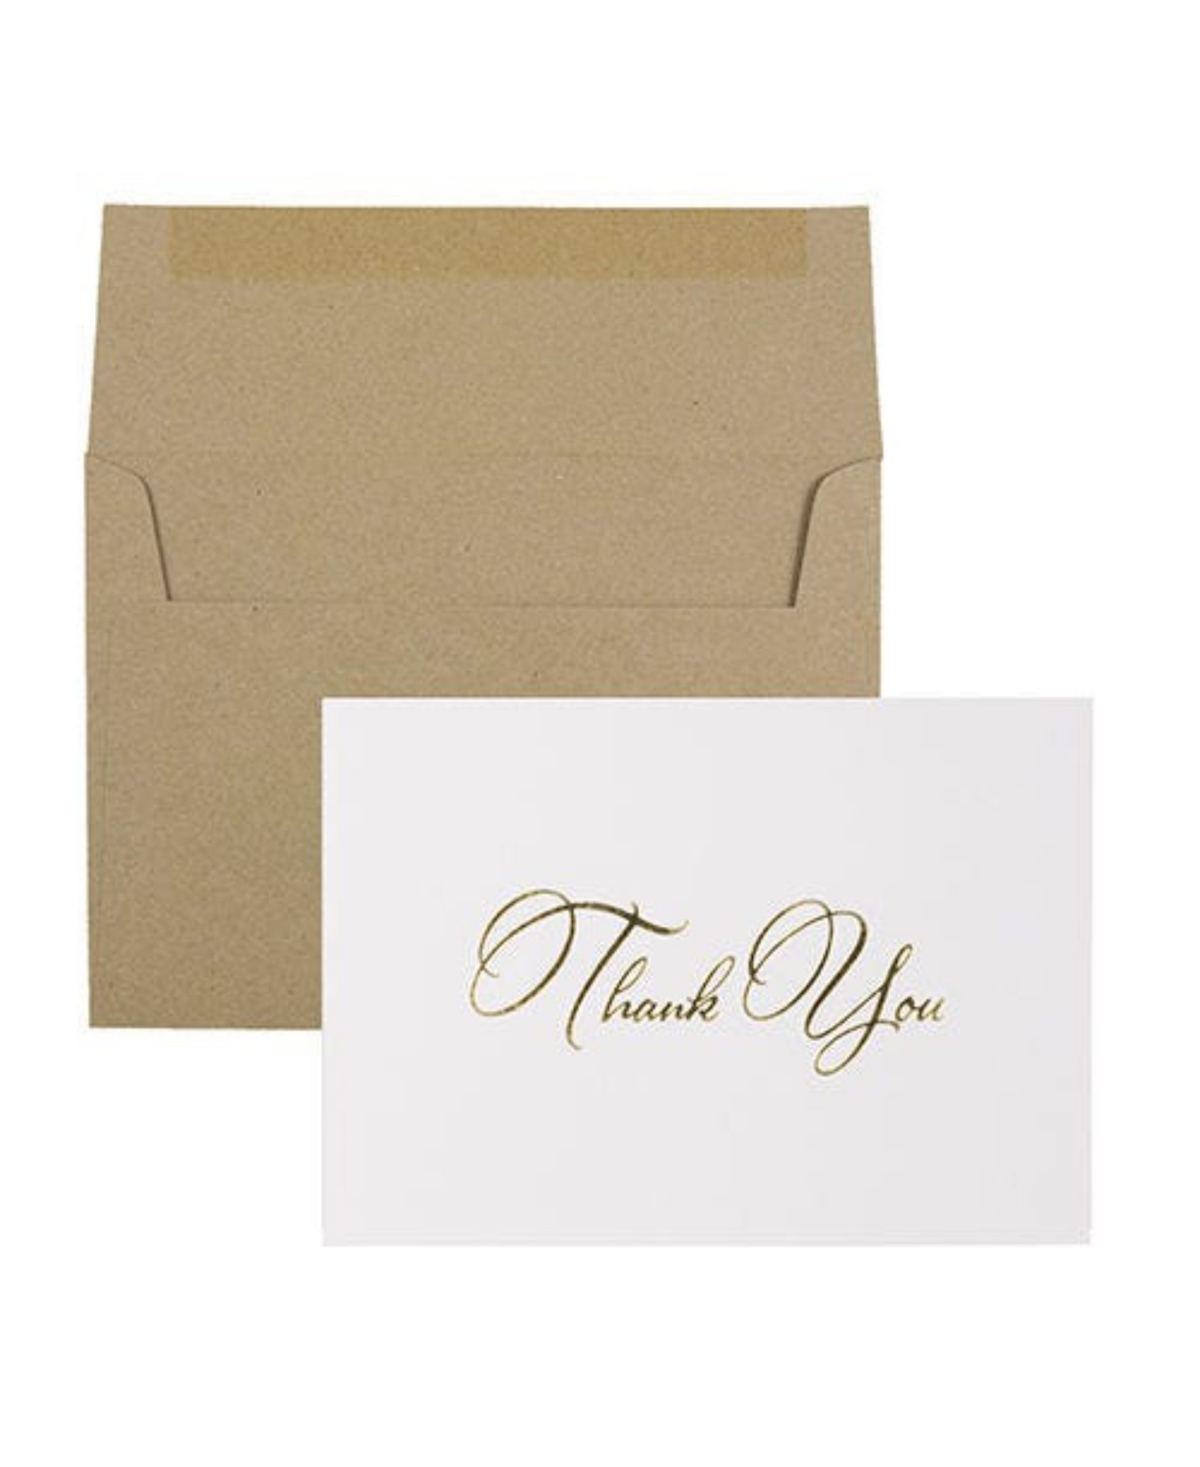 Thank You Card Sets - 25 Cards and Envelopes - Gold Script Cards Brown Kraft Envelopes